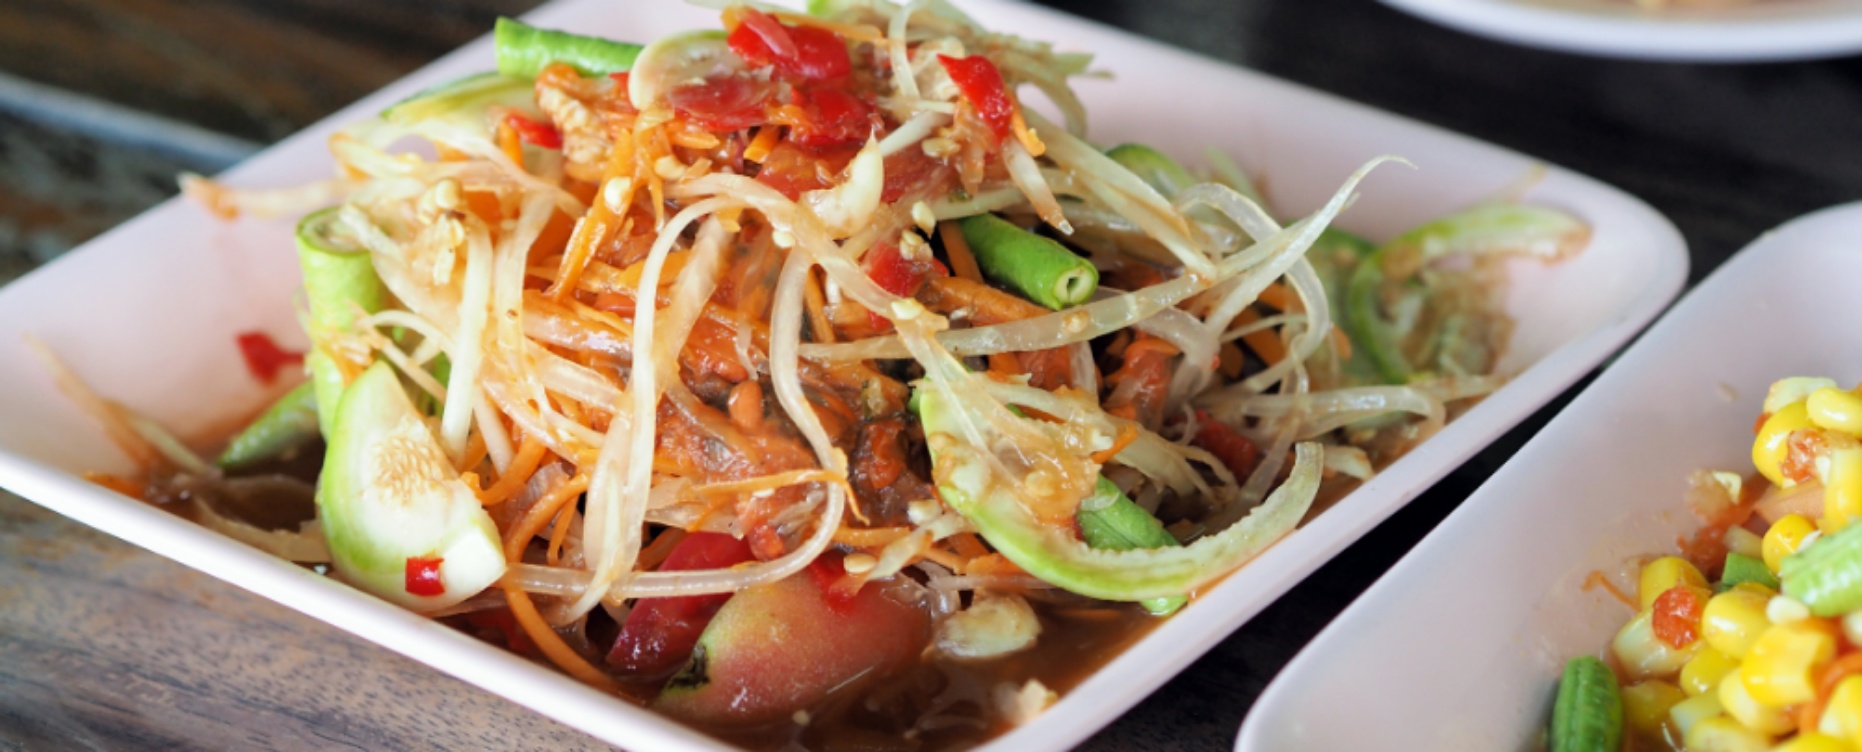 Преимущества тайской кухни